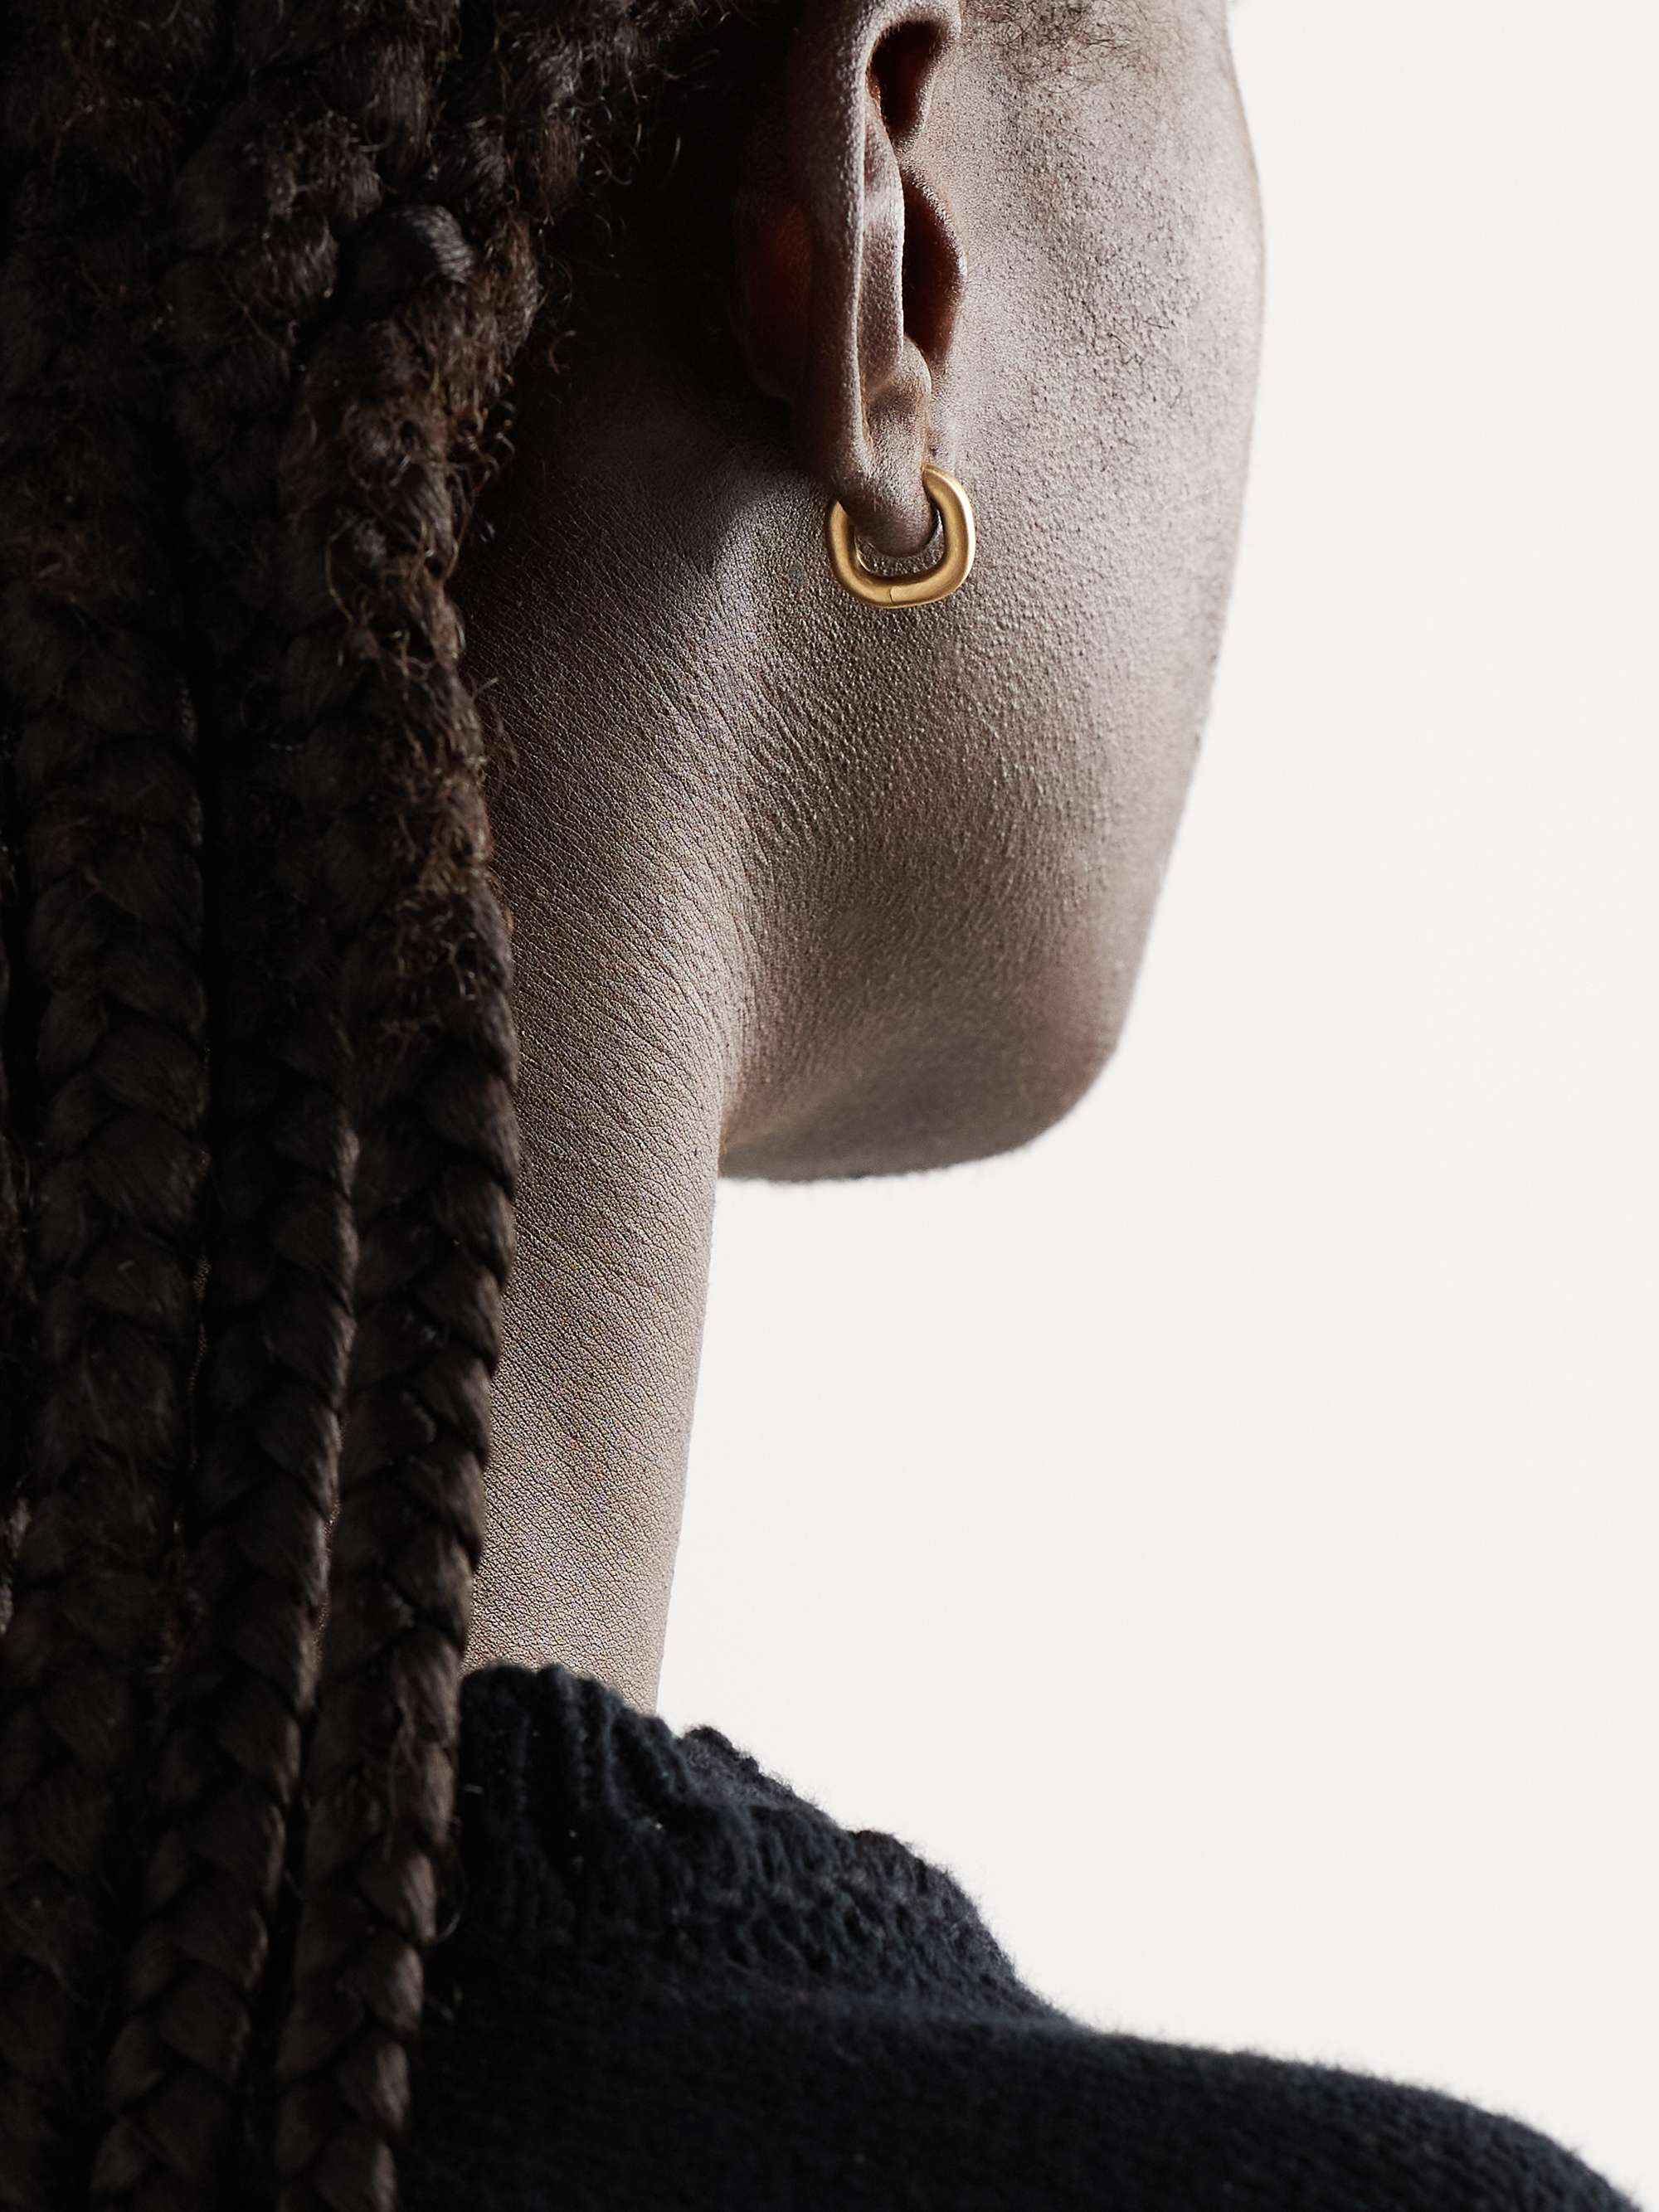 SHOLA BRANSON Cushion Huggie 18-Karat Gold Hoop Earrings